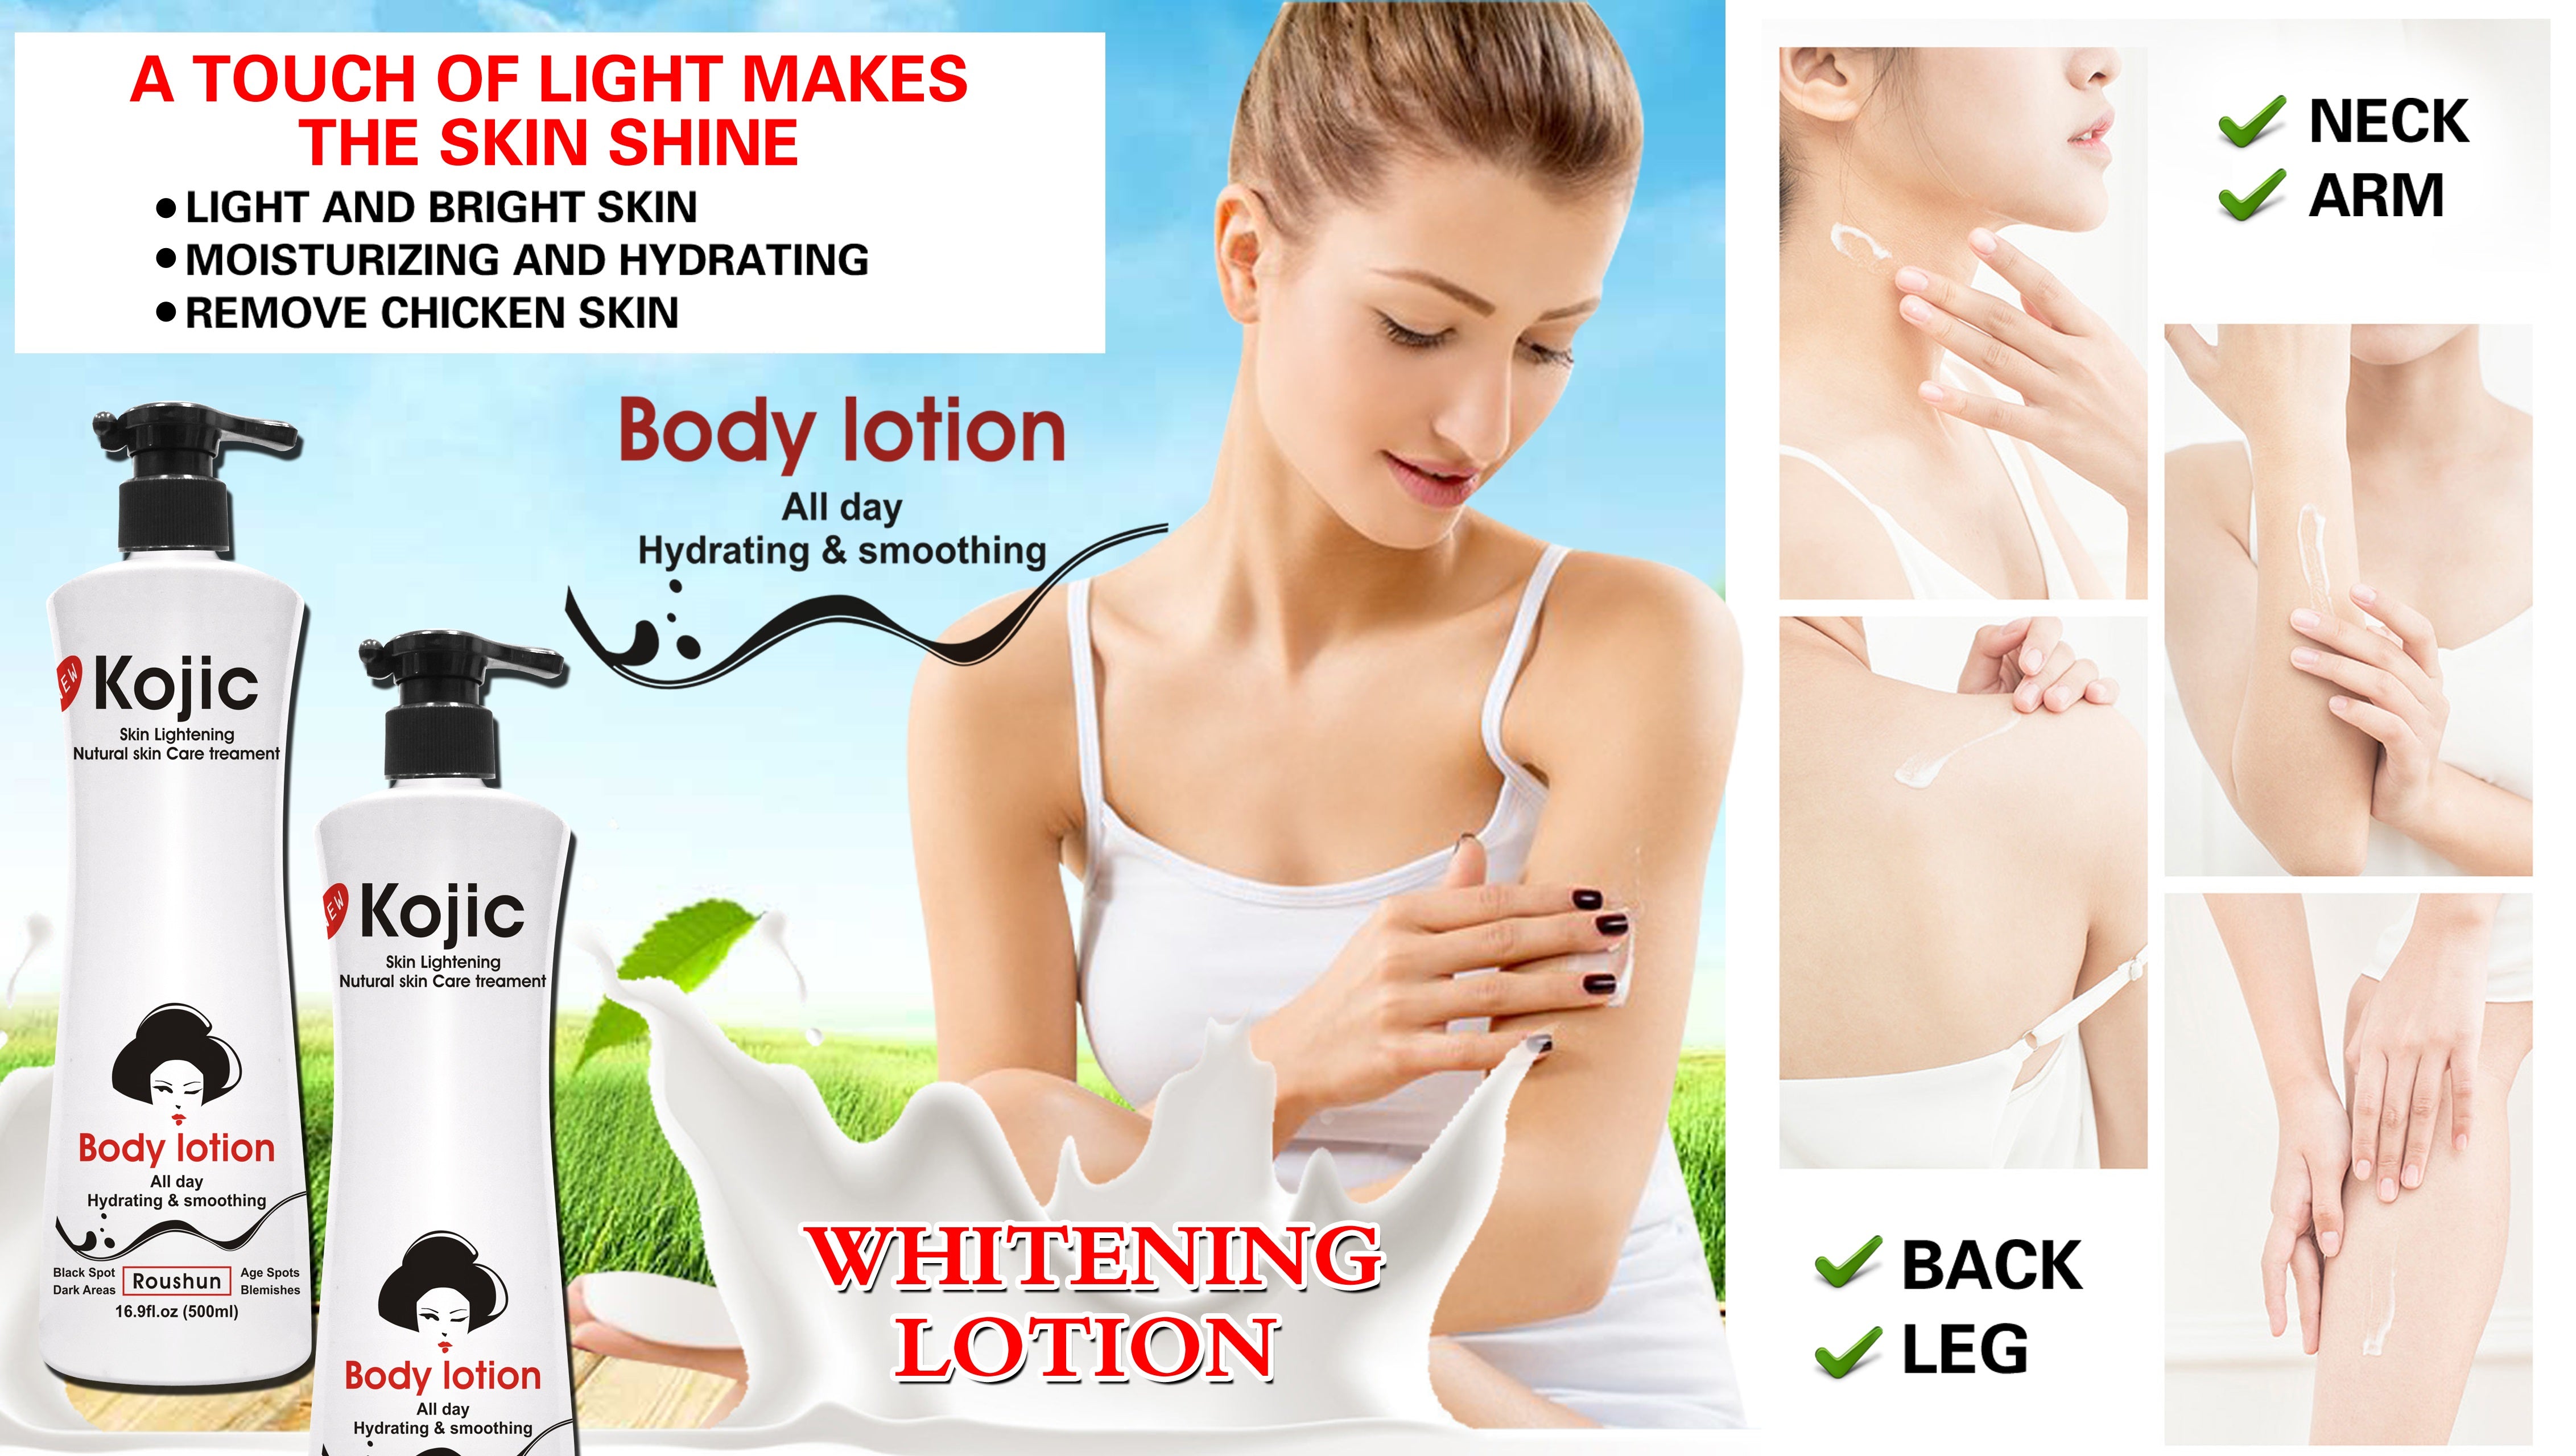 Kojic Skin Lightening Body Lotion